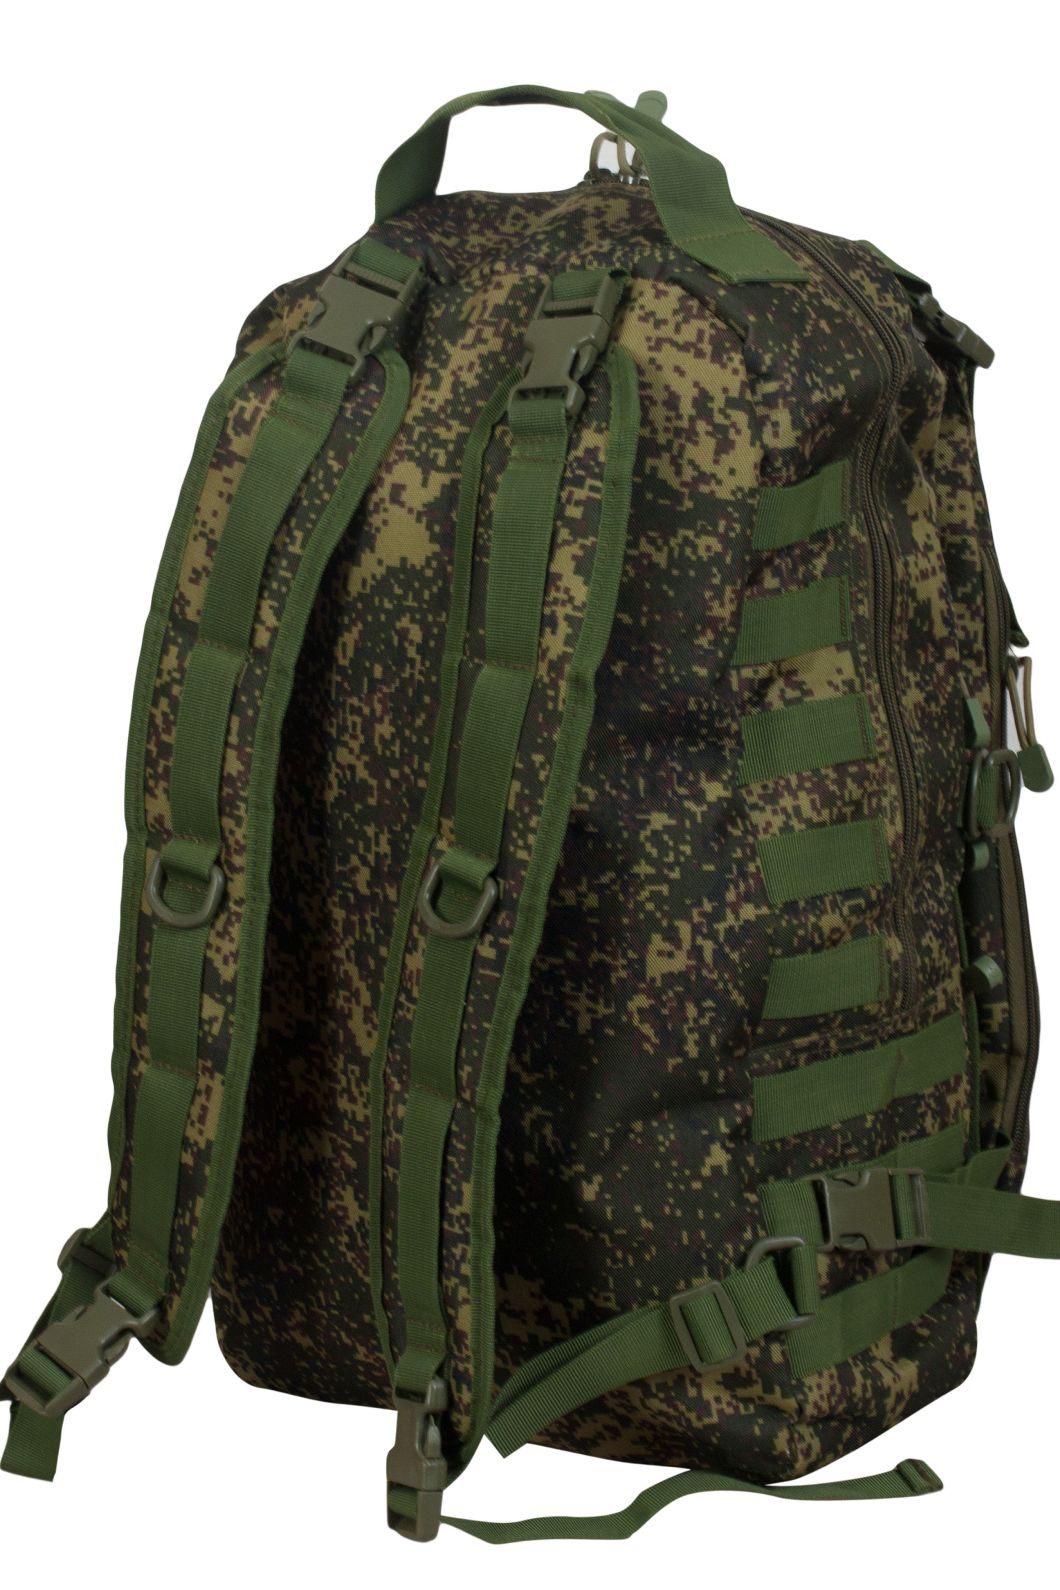 Купить камуфляжный армейский рюкзак с нашивкой ДПС оптом выгодно